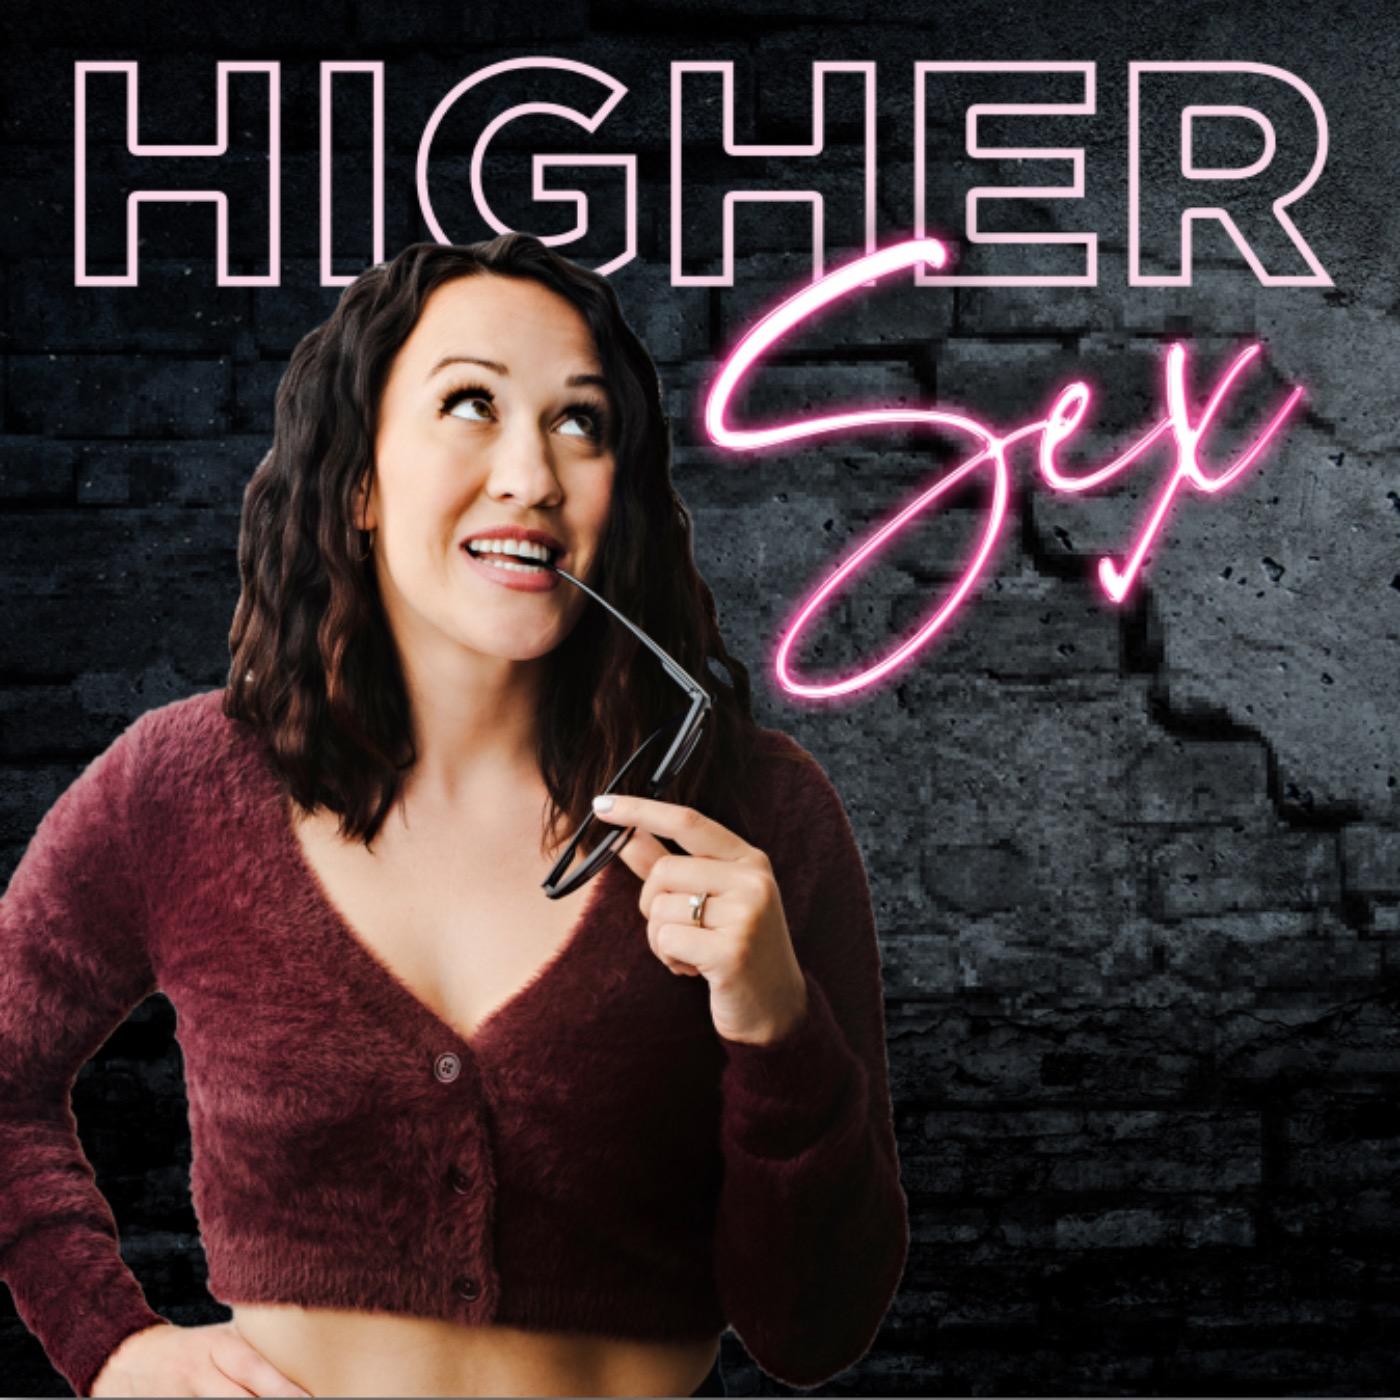 Higher Sex